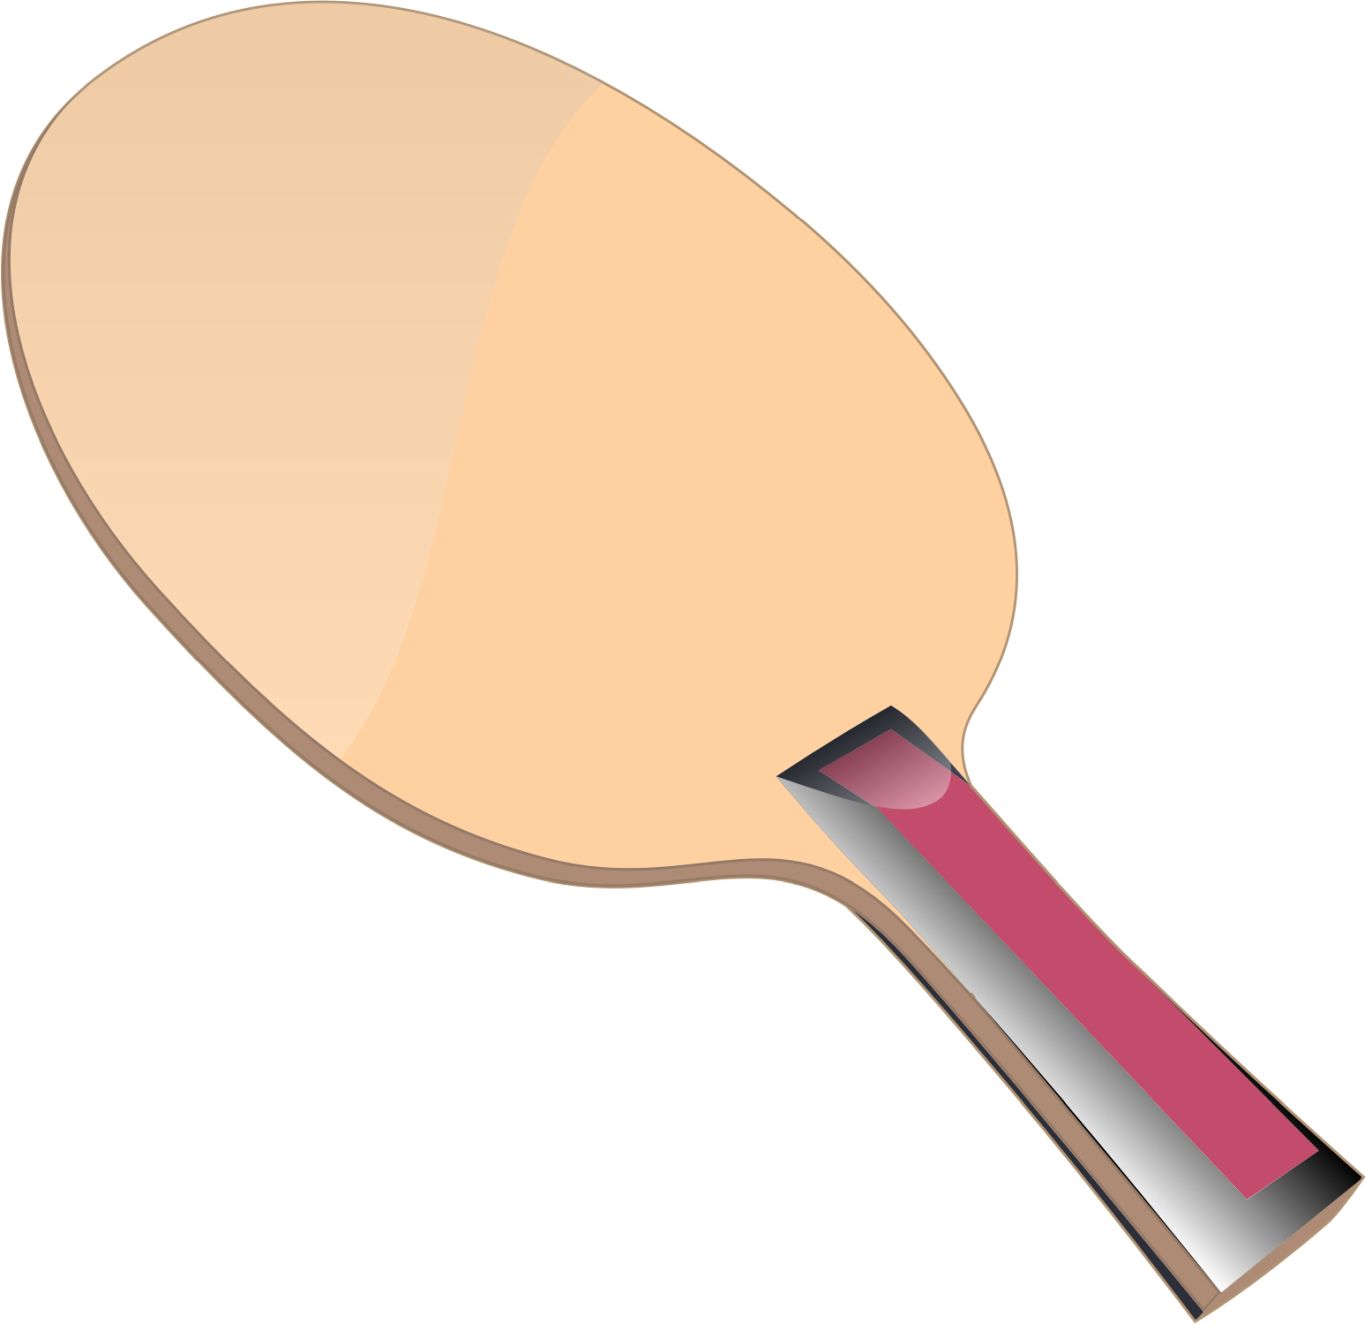 Ping Pong racket PNG image    图片编号:10374